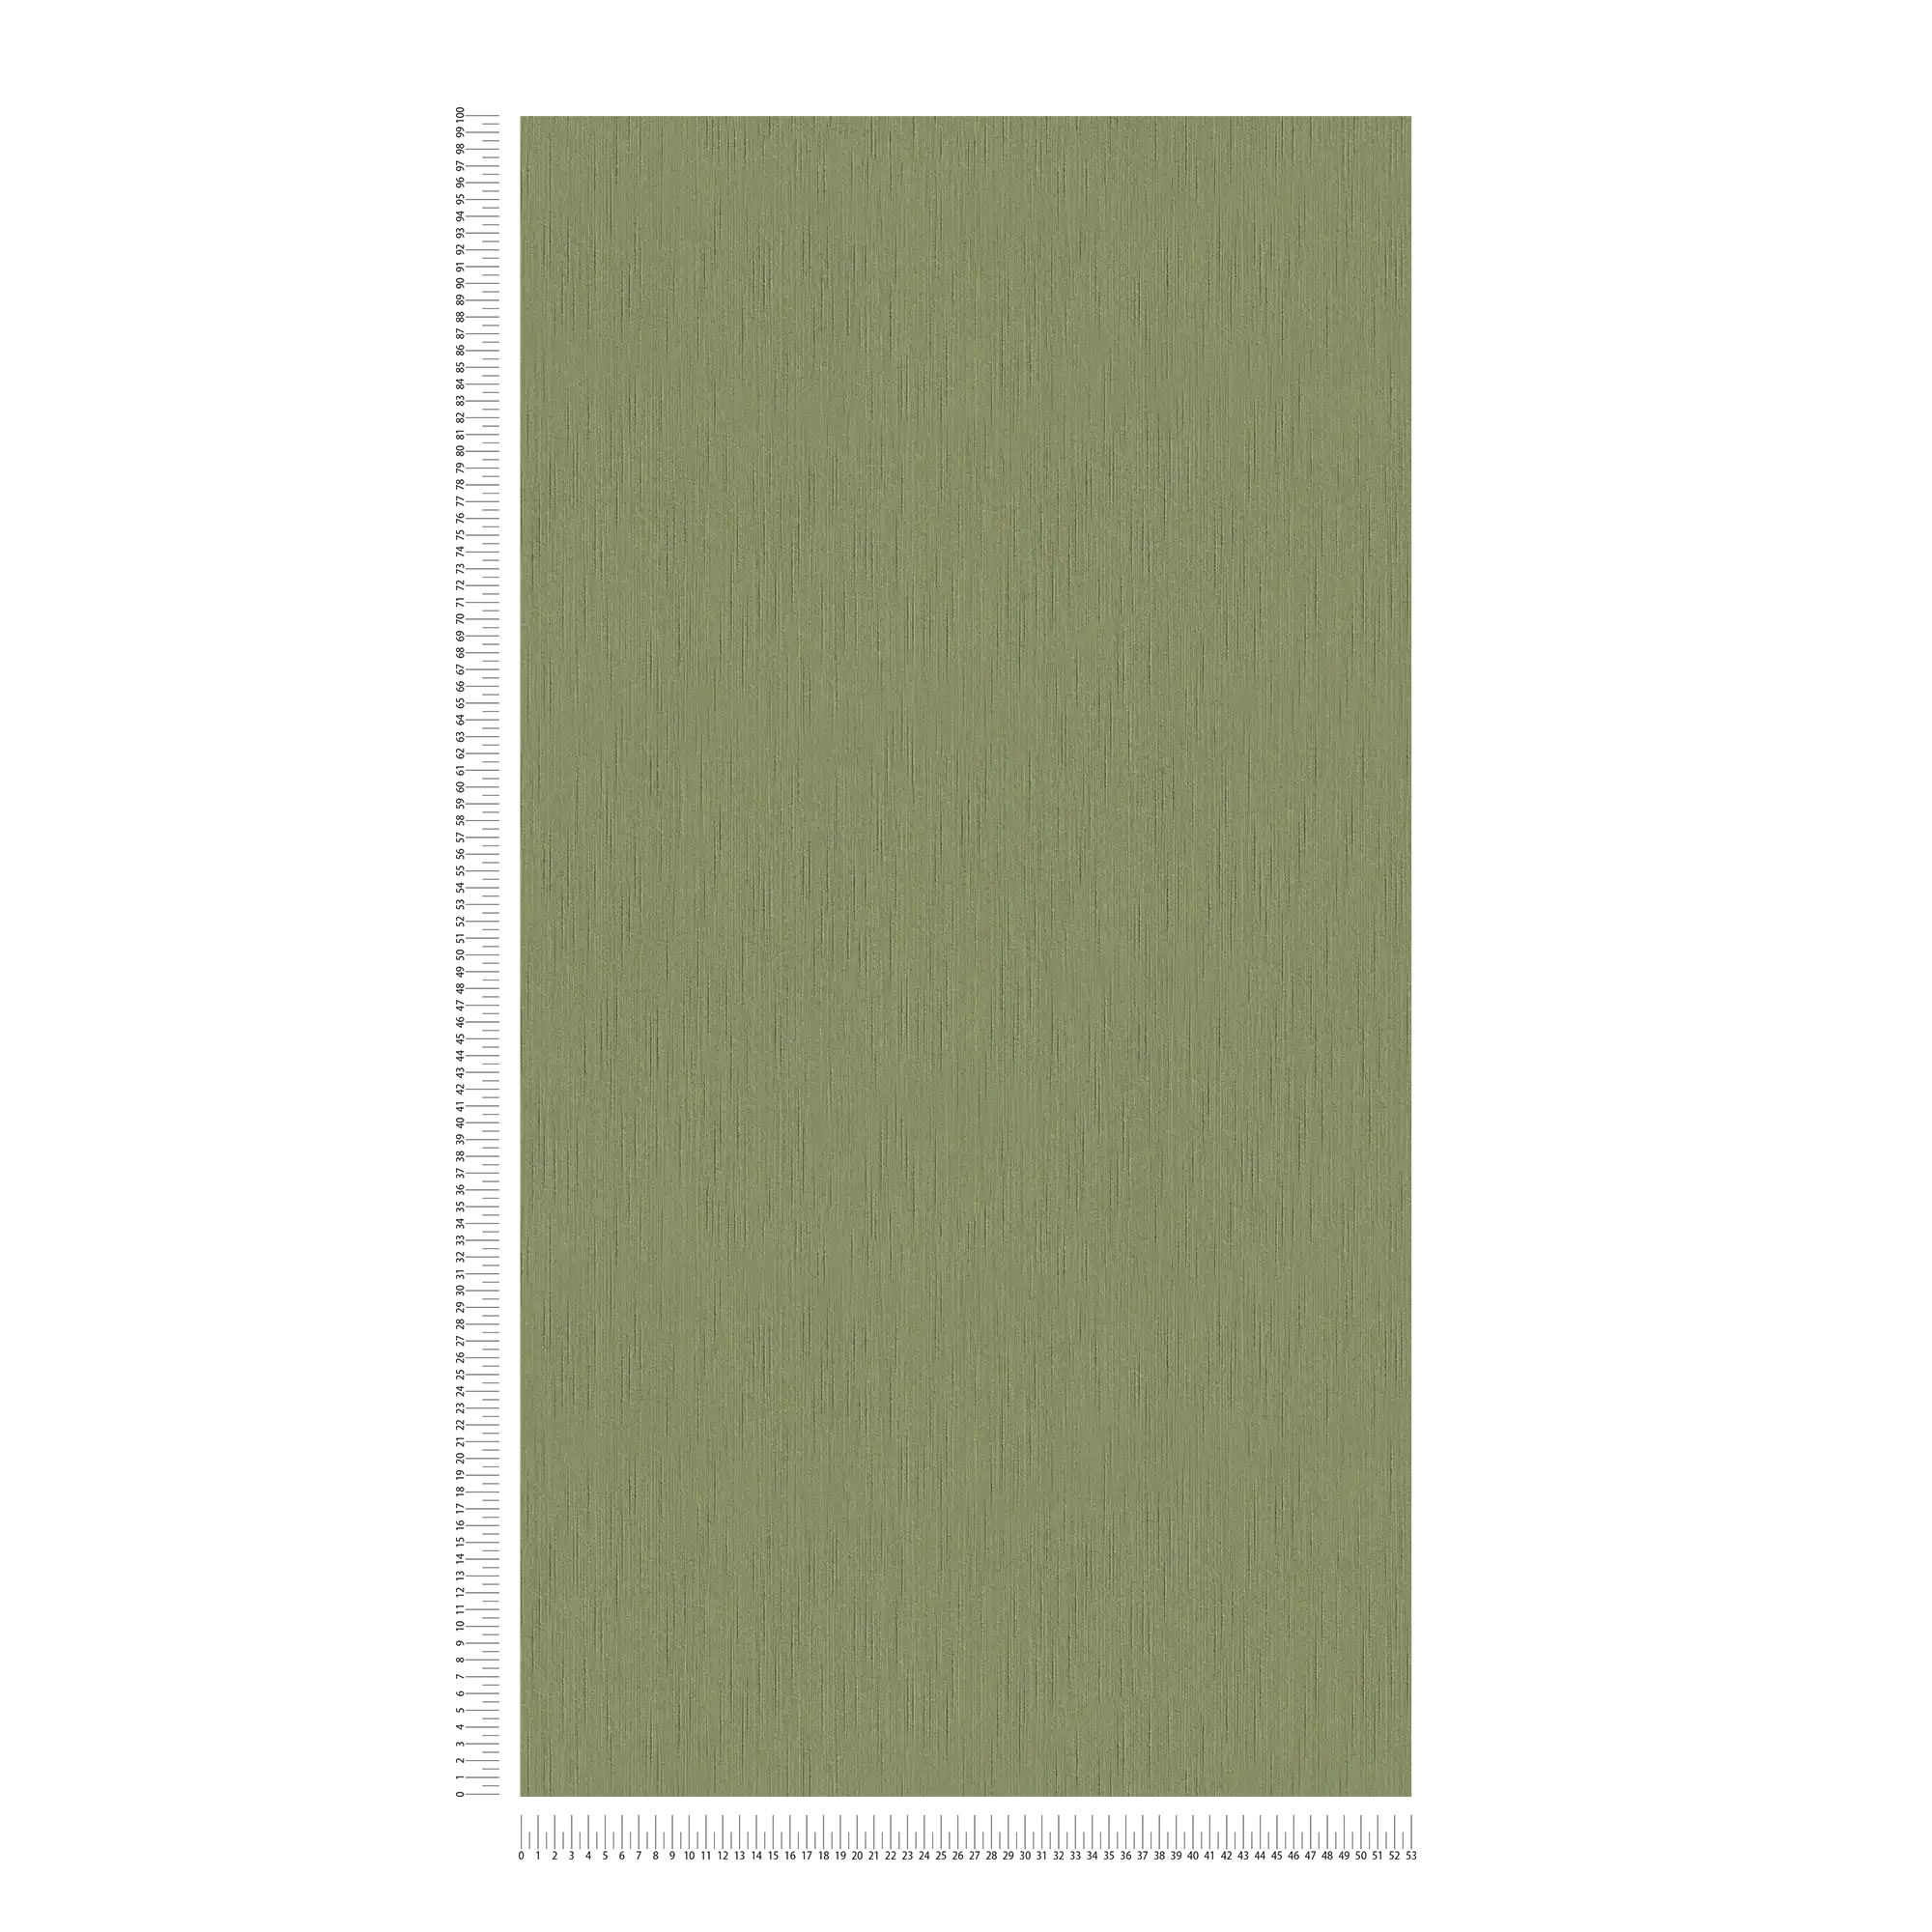             Donkergroen vliesbehang met gevlekte structuur - groen
        